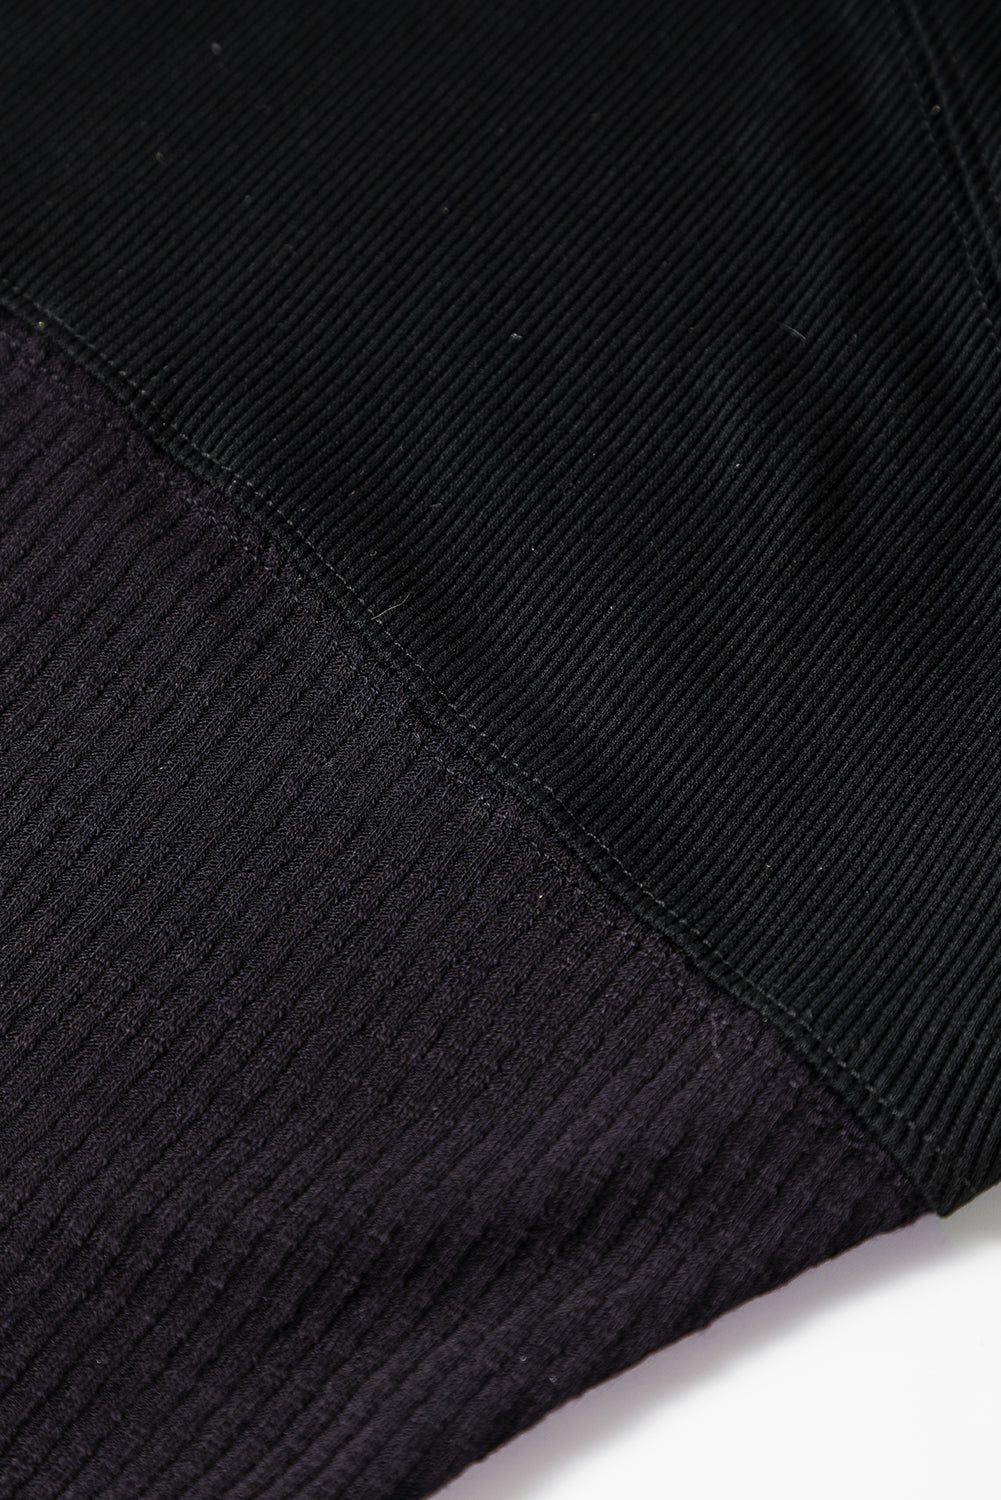 Črna rebrasta majica z dolgimi rokavi in ​​pletenimi gumbi